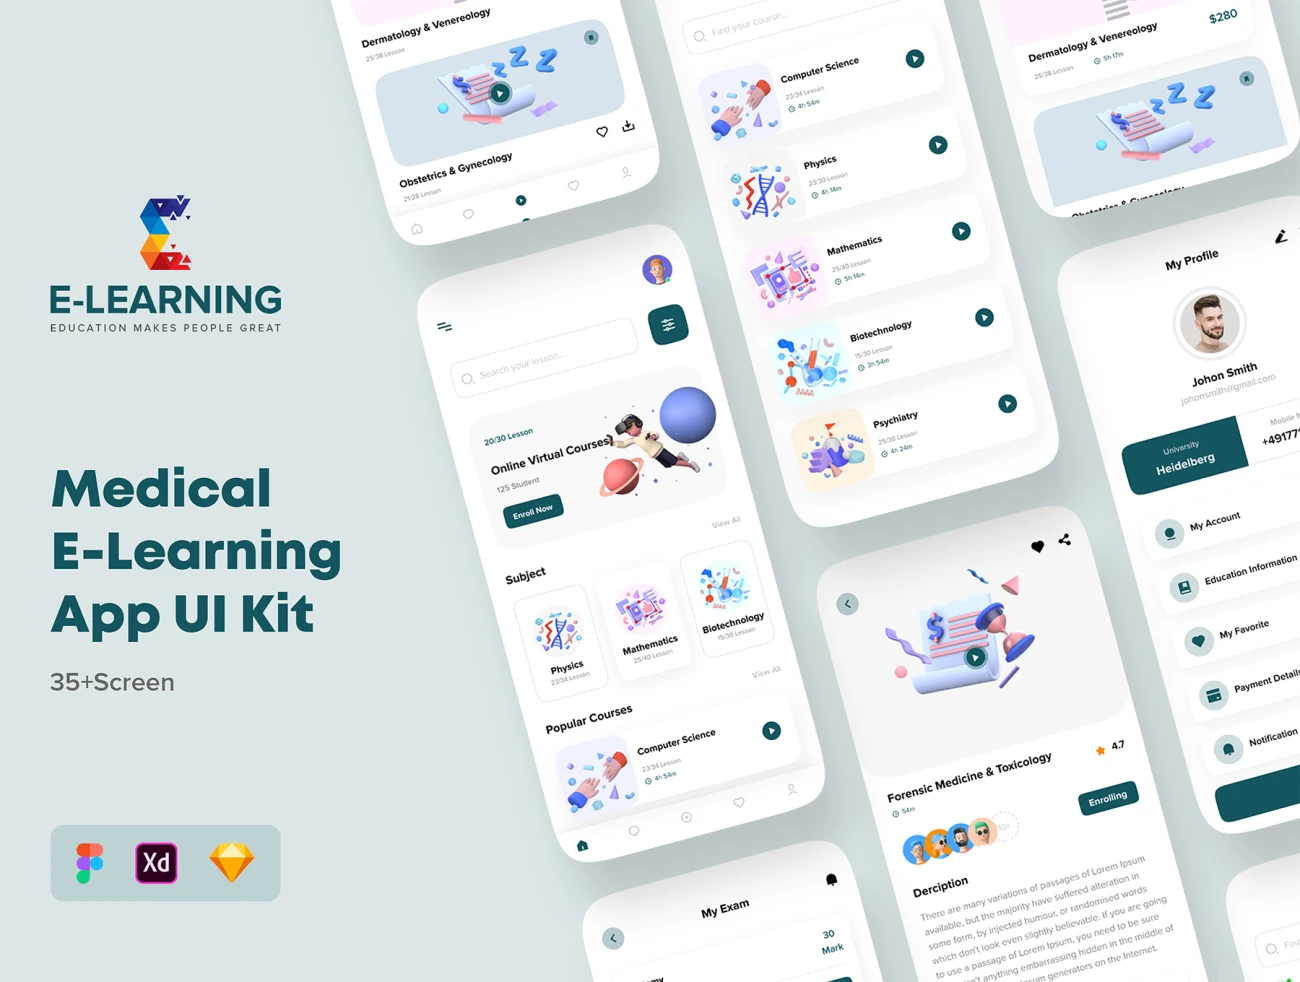 医学专业在线网络课程教学应用UI套件 Medical E-Learning Online Course App UI Kit插图1